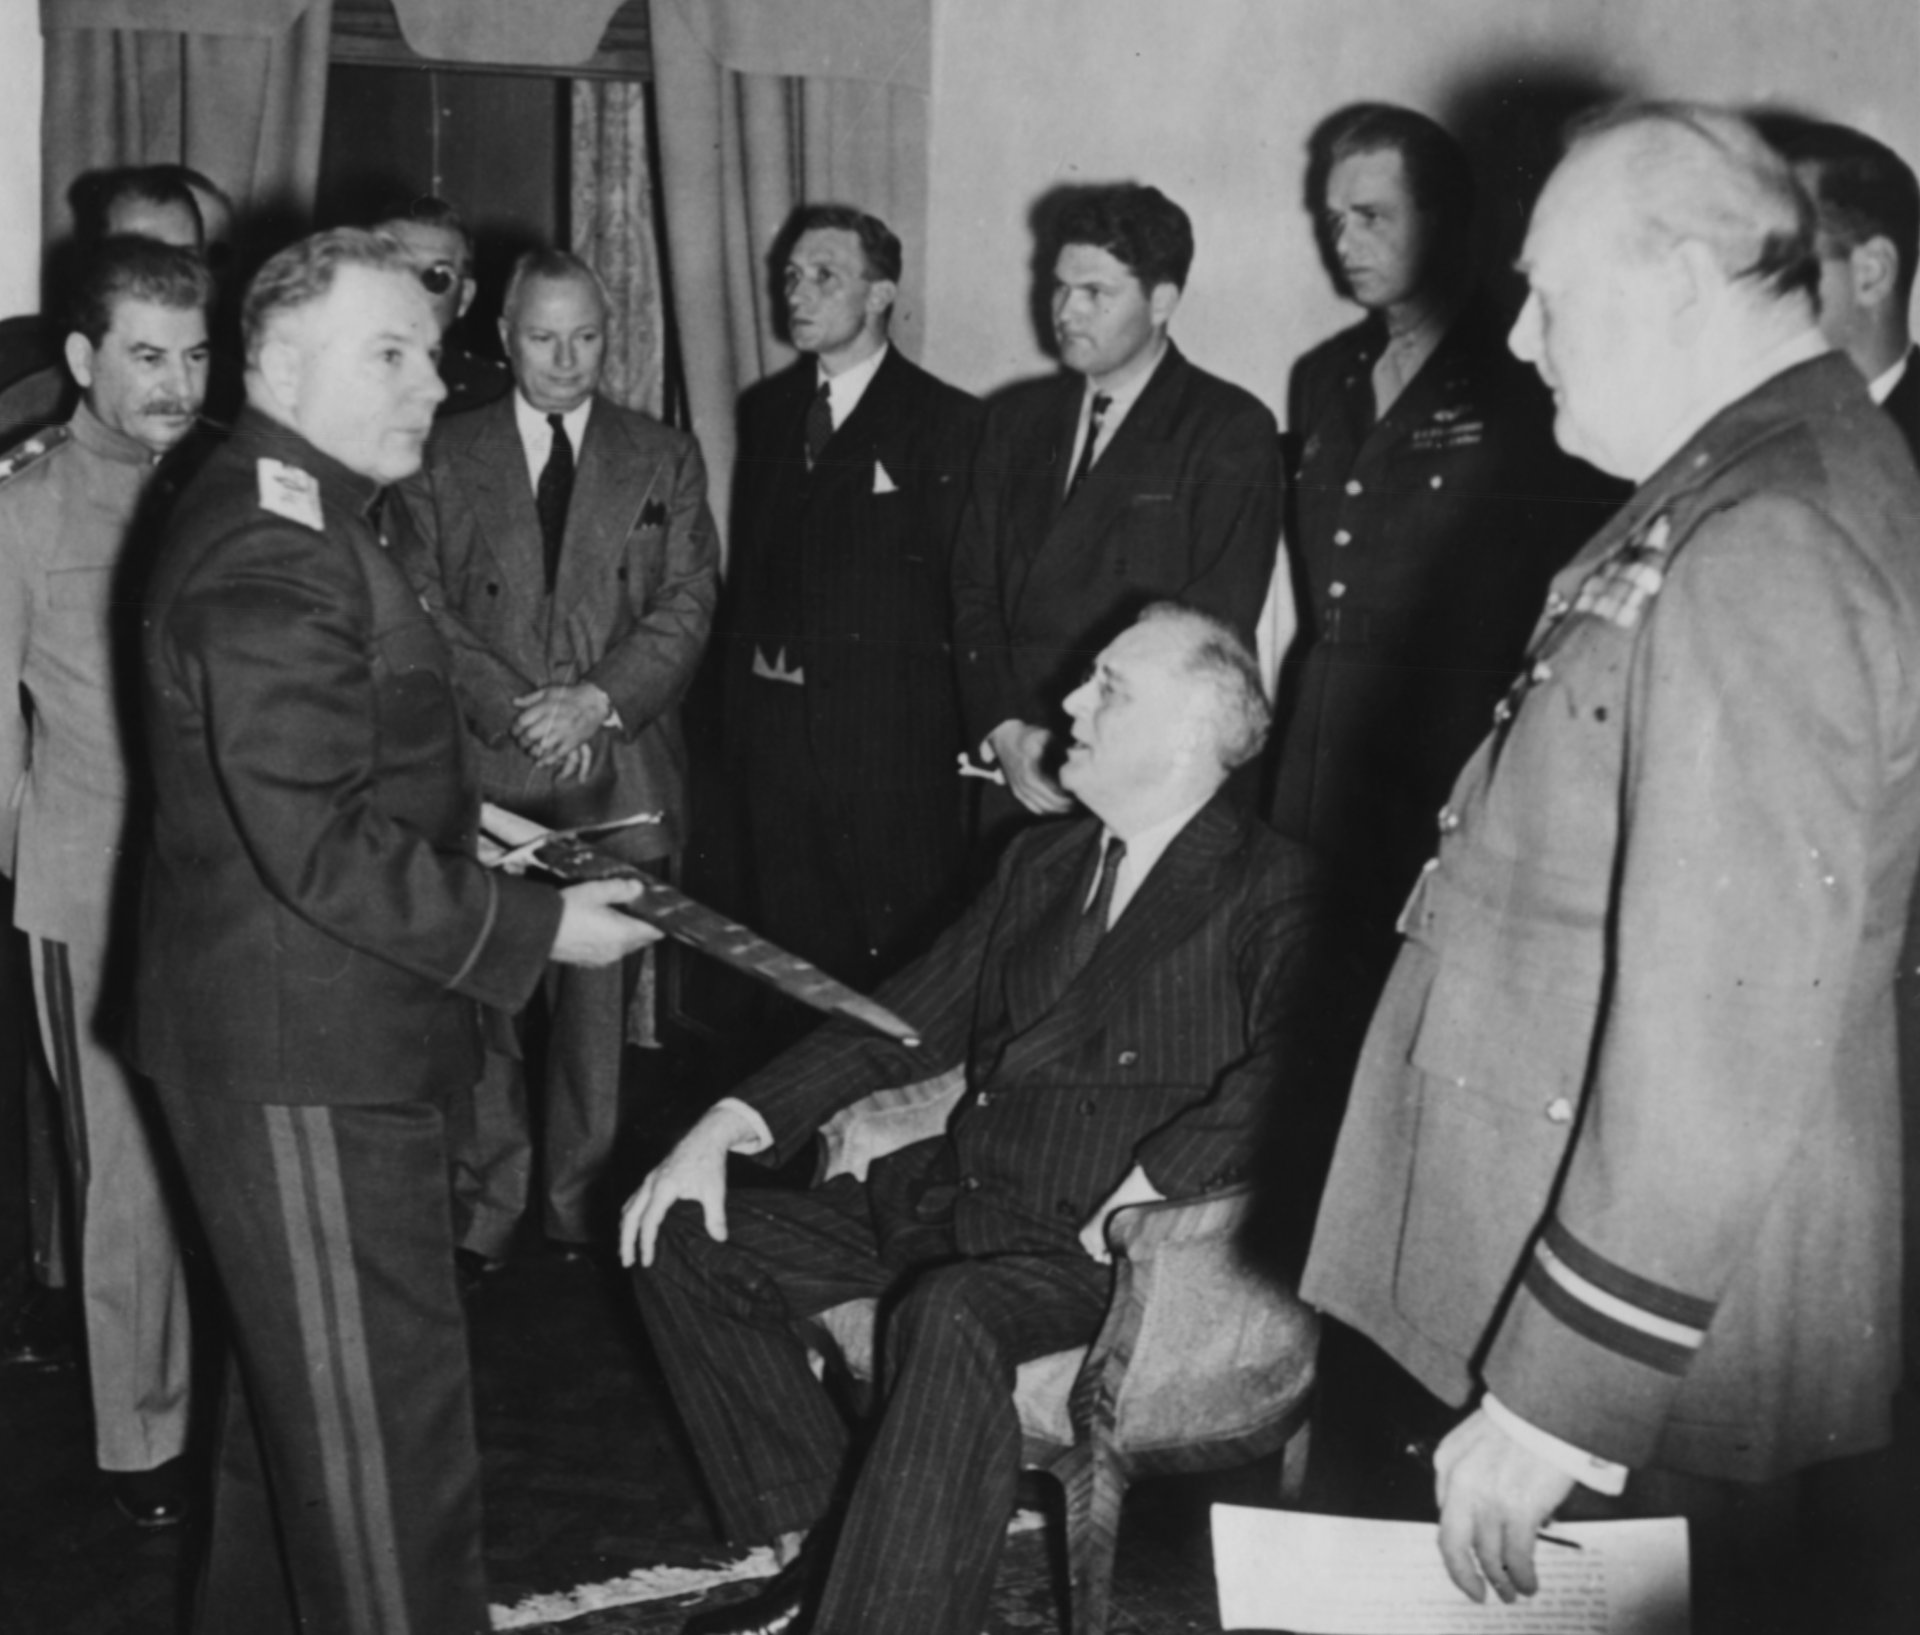 8 декември 1943 г. - Офицер Климент Ворошилов показва меча Сталинград на американския президент Франклин Делано Рузвелт, наблюдаван от британския министър-председател Уинстън Чърчил (вдясно), съветския лидер Йосиф Сталин (вляво) и полковник Елиът Рузвелт (зад баща си в униформа) по време на Техеранската конференция.